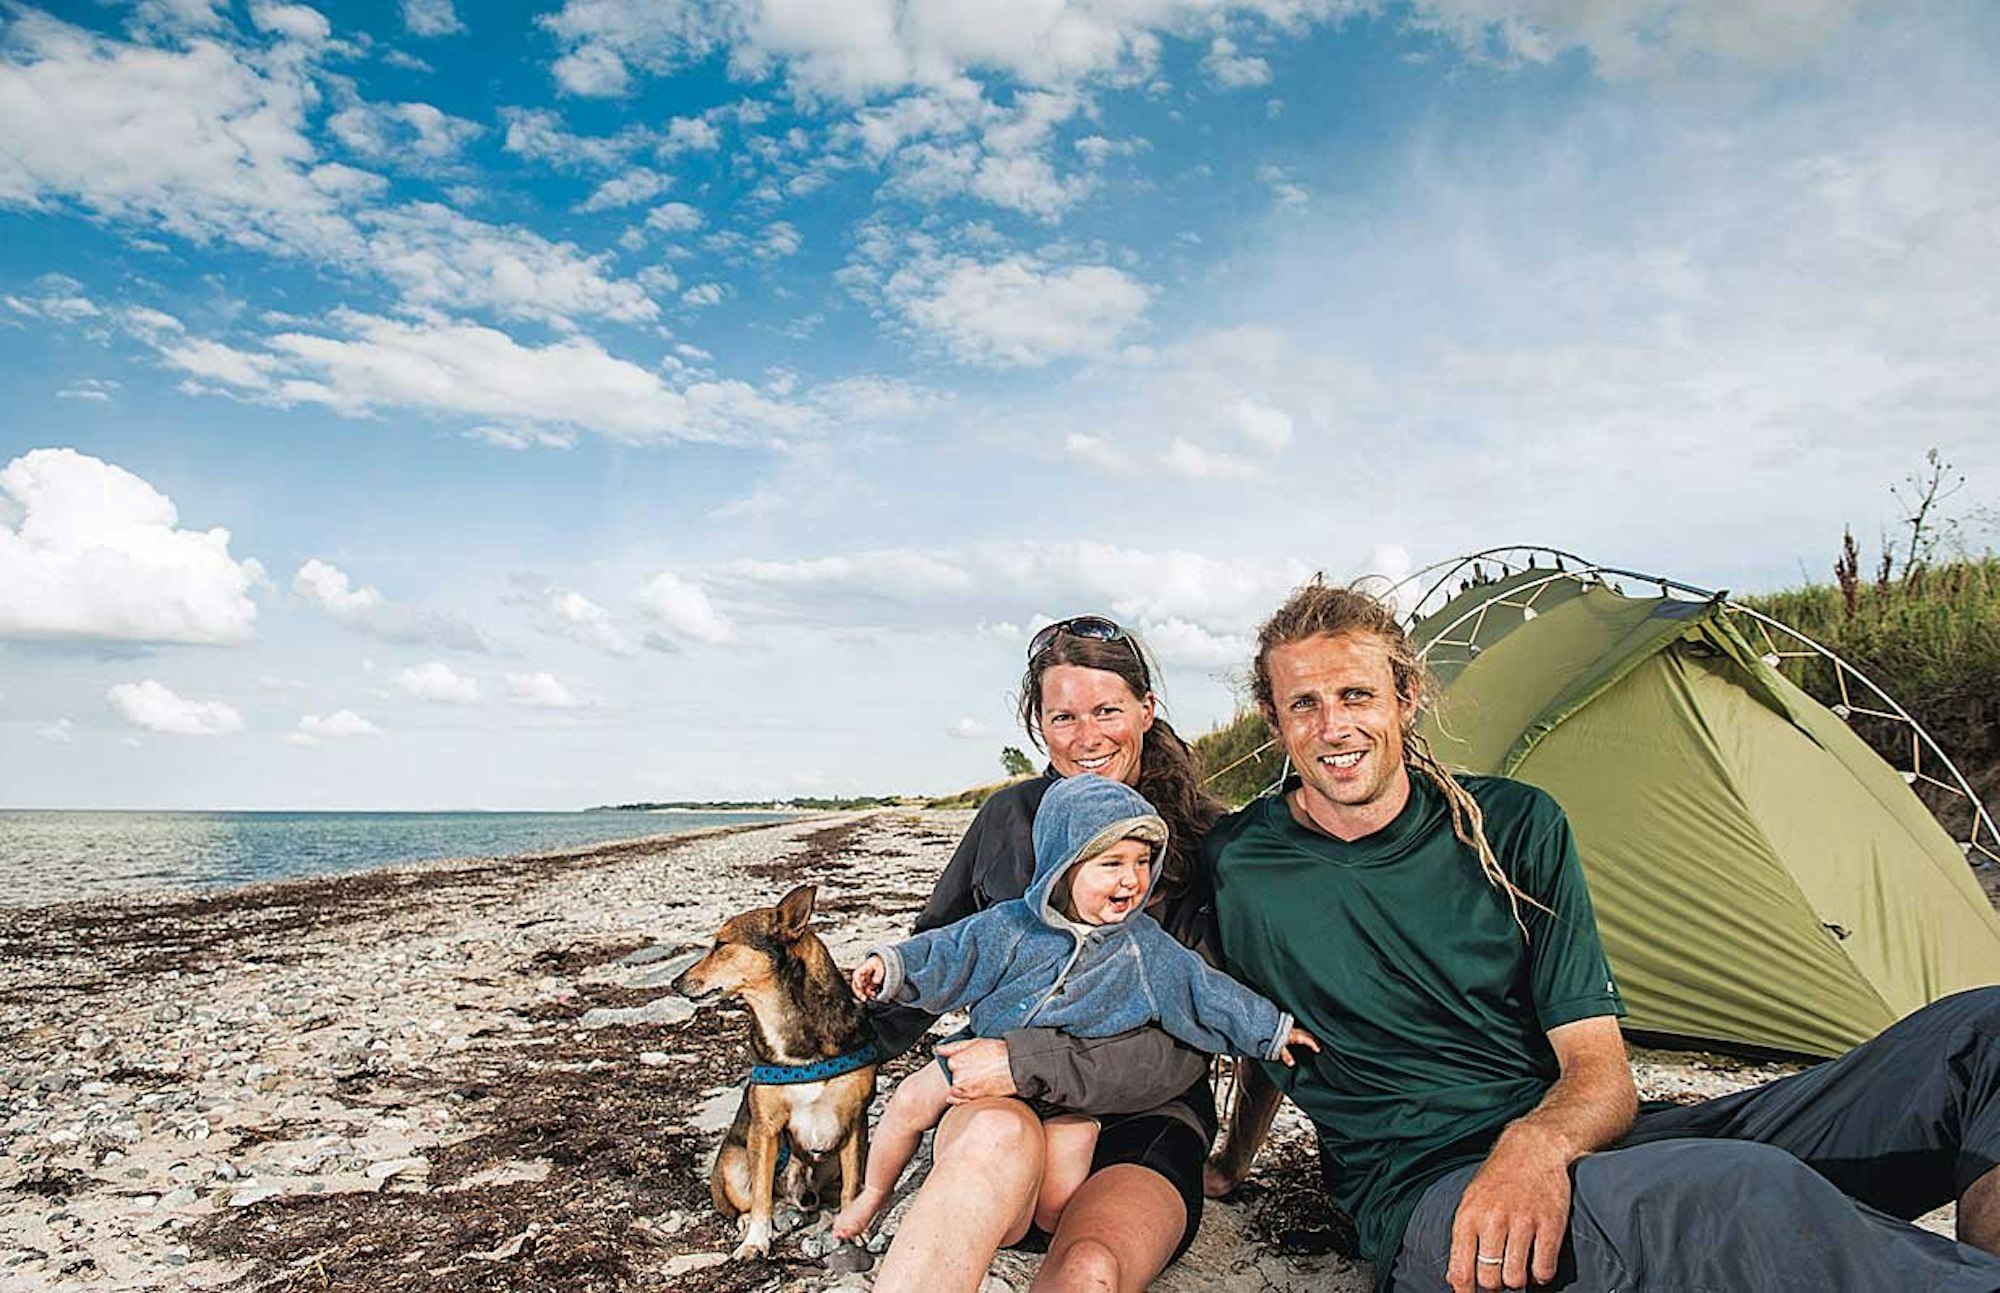 Nach knapp zwei Monaten und zirka 2000 Kilometern erreicht Familie Maul/ Wetzel die Ostseeküste.